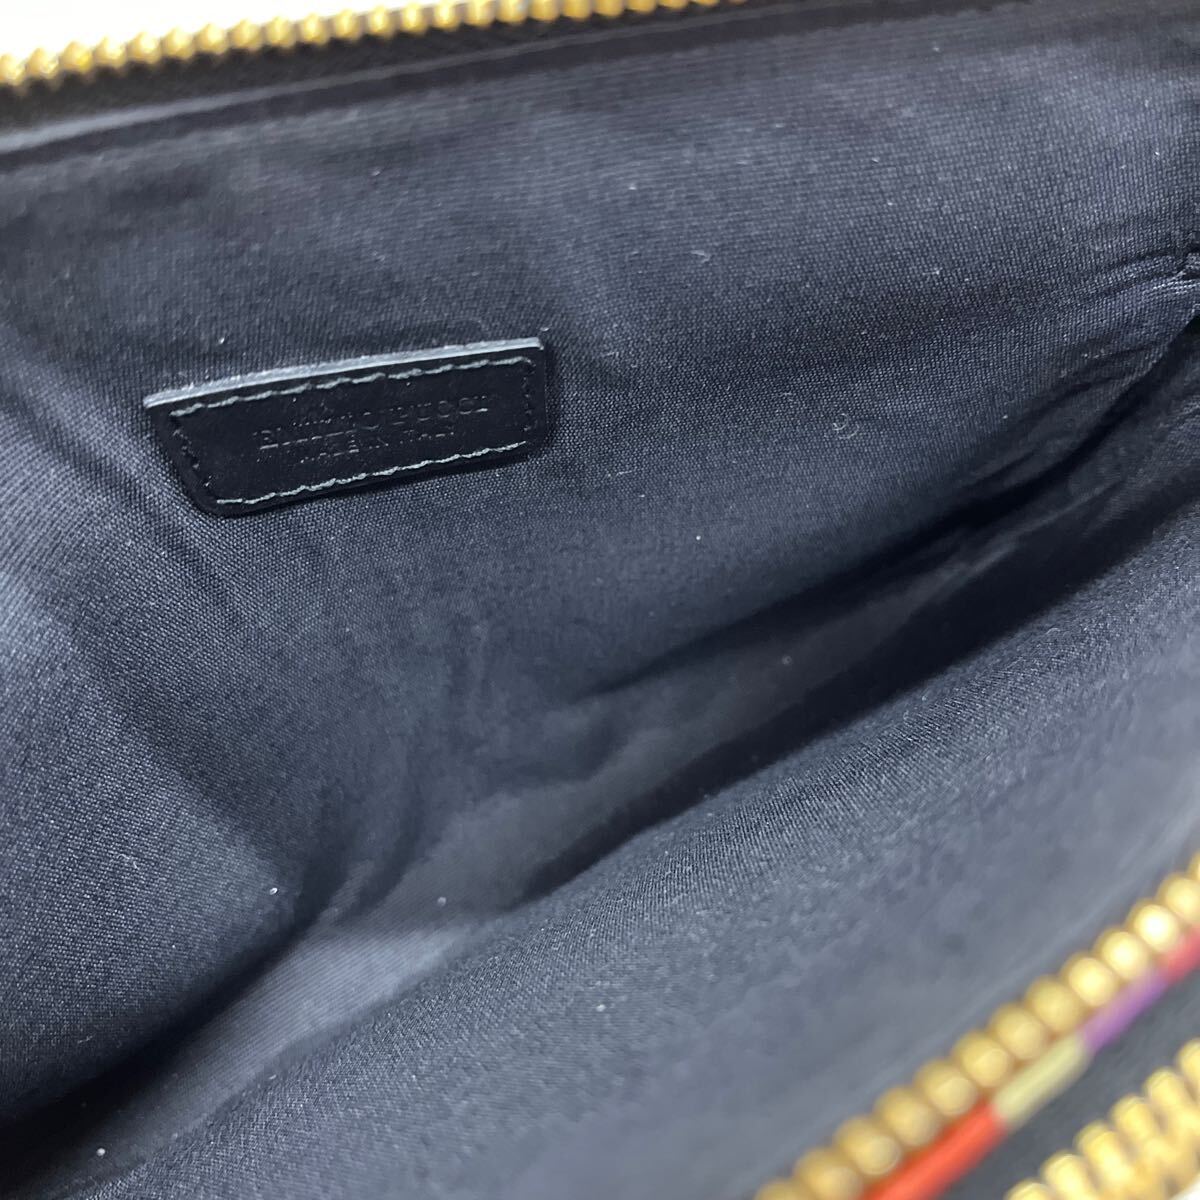 1399* Италия производства Emilio Pucci Emilio Pucci сумка сумка плечо наклонный .. цепь многоцветный черный женский 